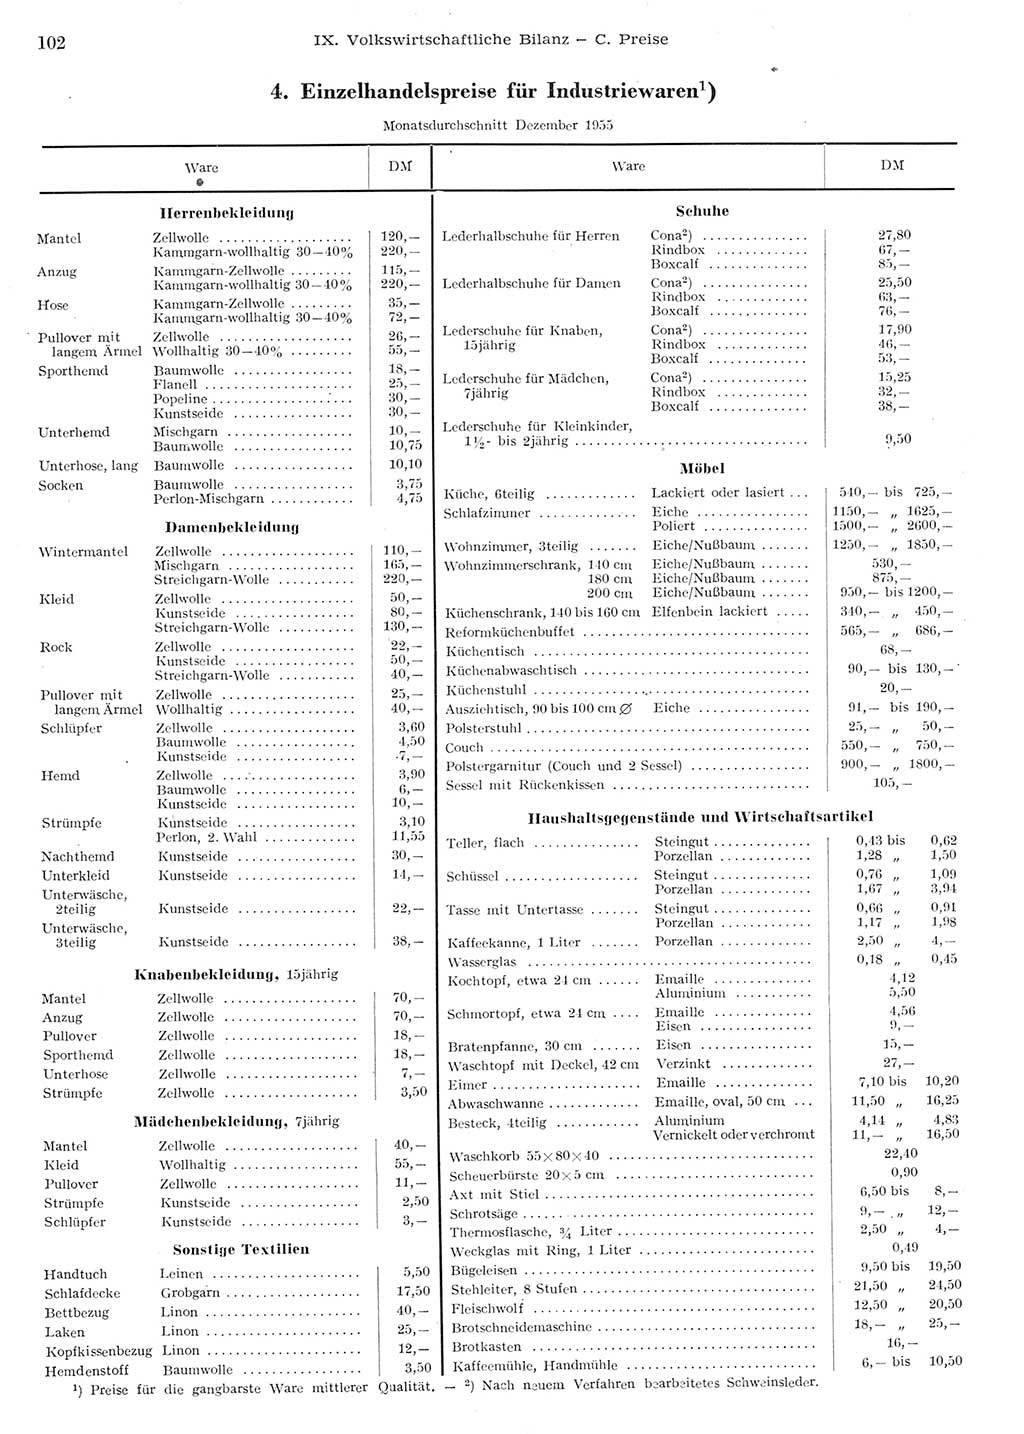 Statistisches Jahrbuch der Deutschen Demokratischen Republik (DDR) 1955, Seite 102 (Stat. Jb. DDR 1955, S. 102)